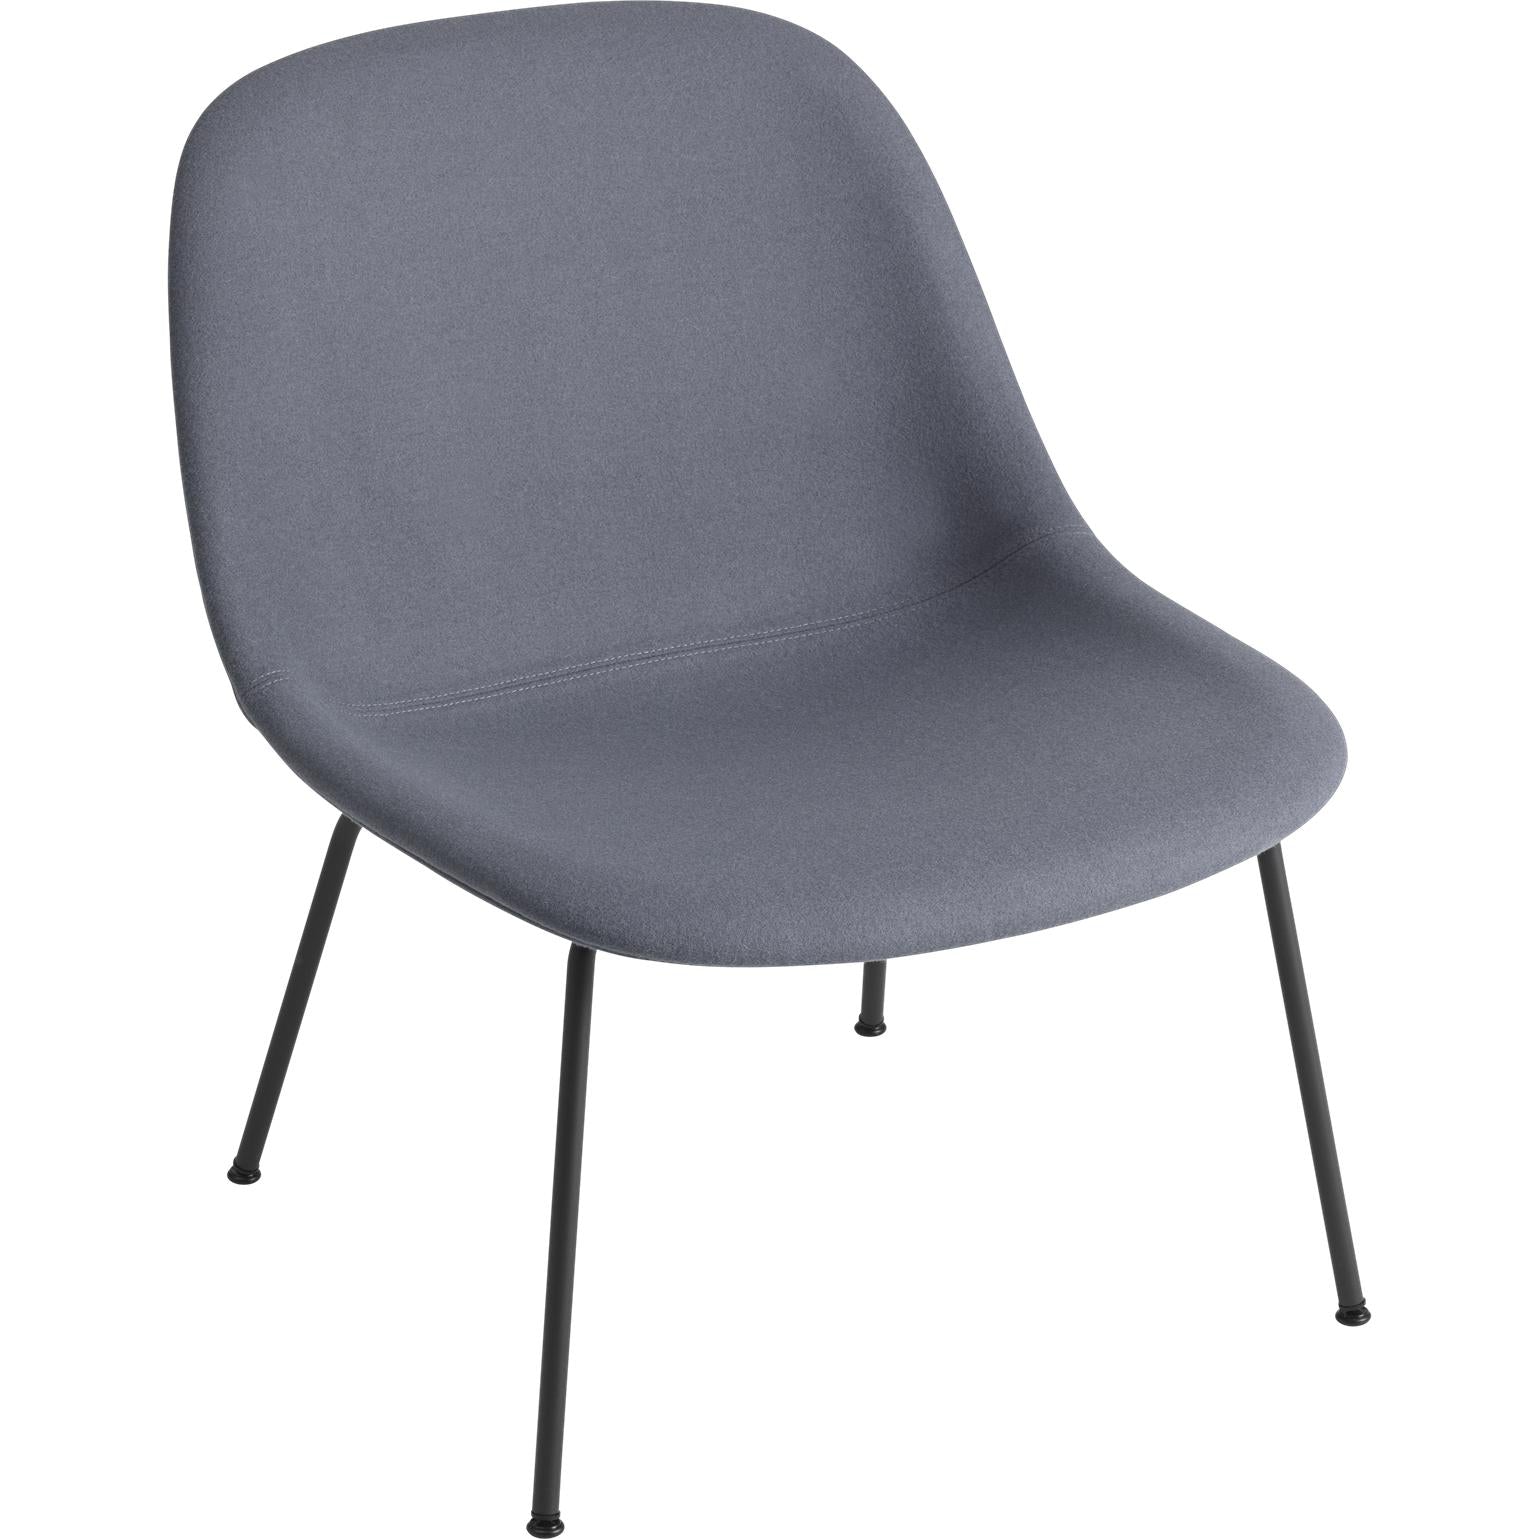 Base della sedia in fibra di fibra di muuto, sedile in tessuto, nero/ divina 154